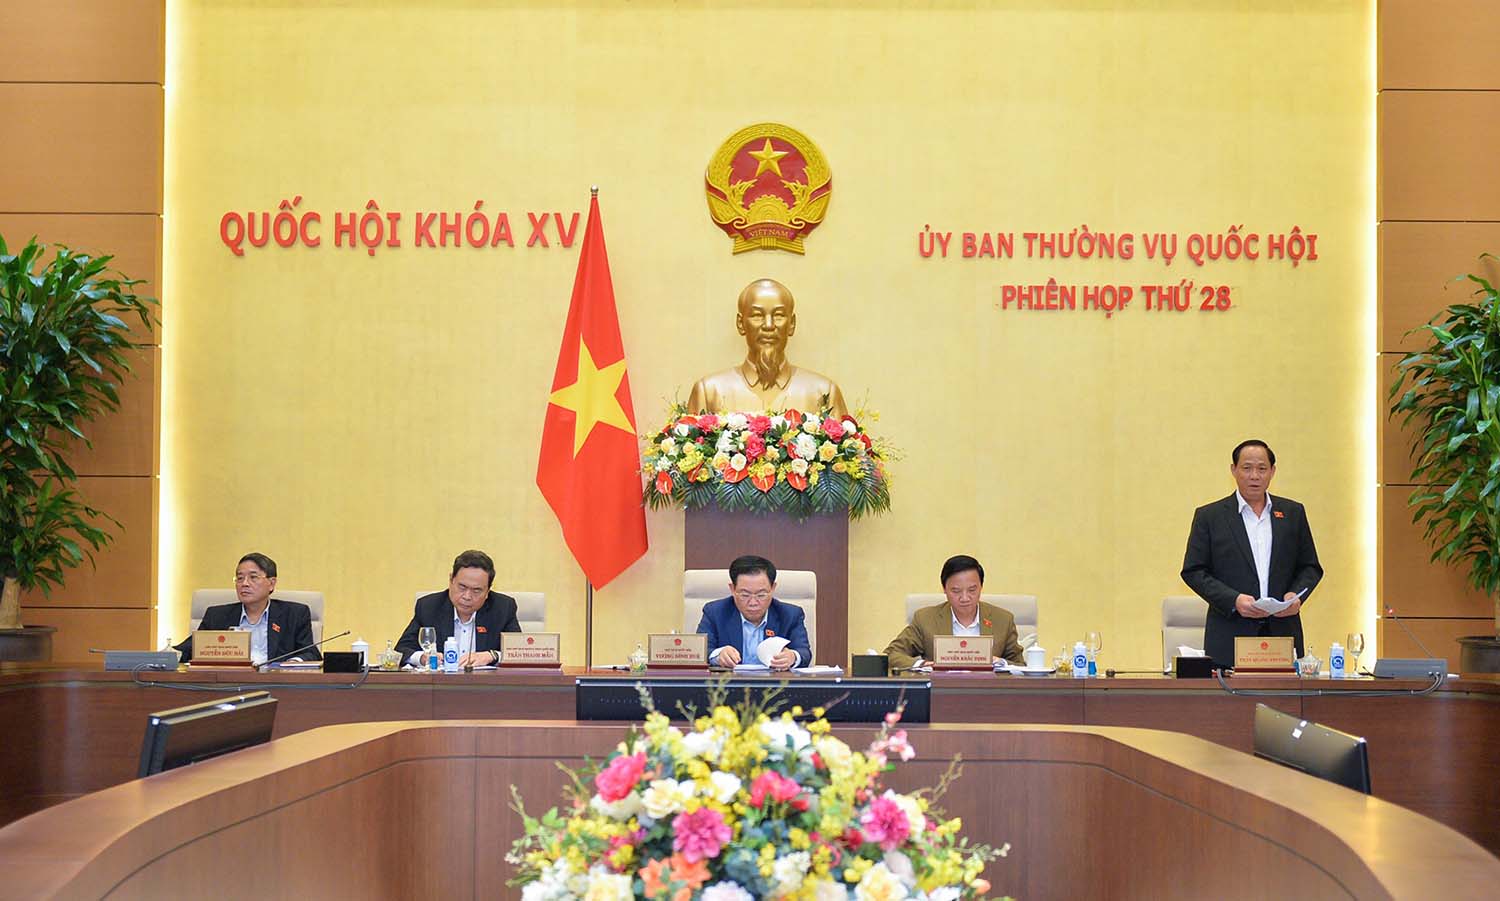 Phó Chủ tịch Quốc hội Trần Quang Phương kết luận nội dung thảo luận. Ảnh: Phạm Thắng  